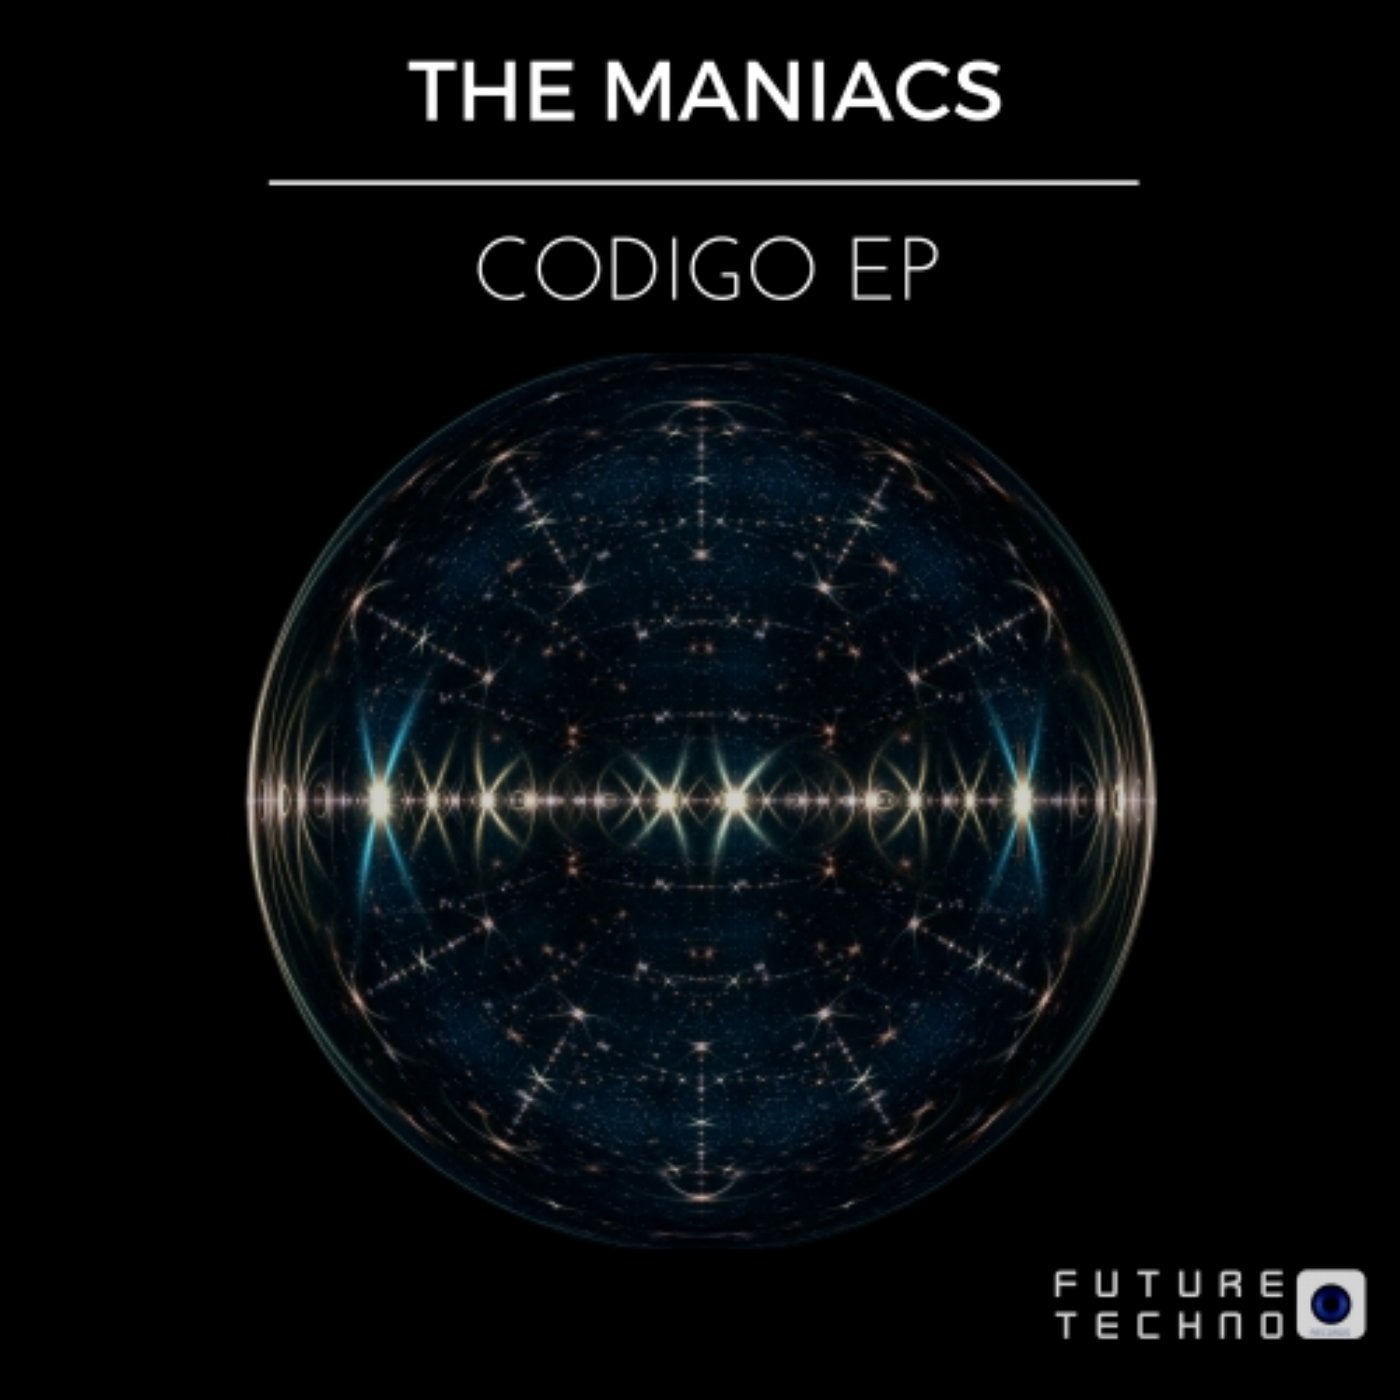 Codigo EP